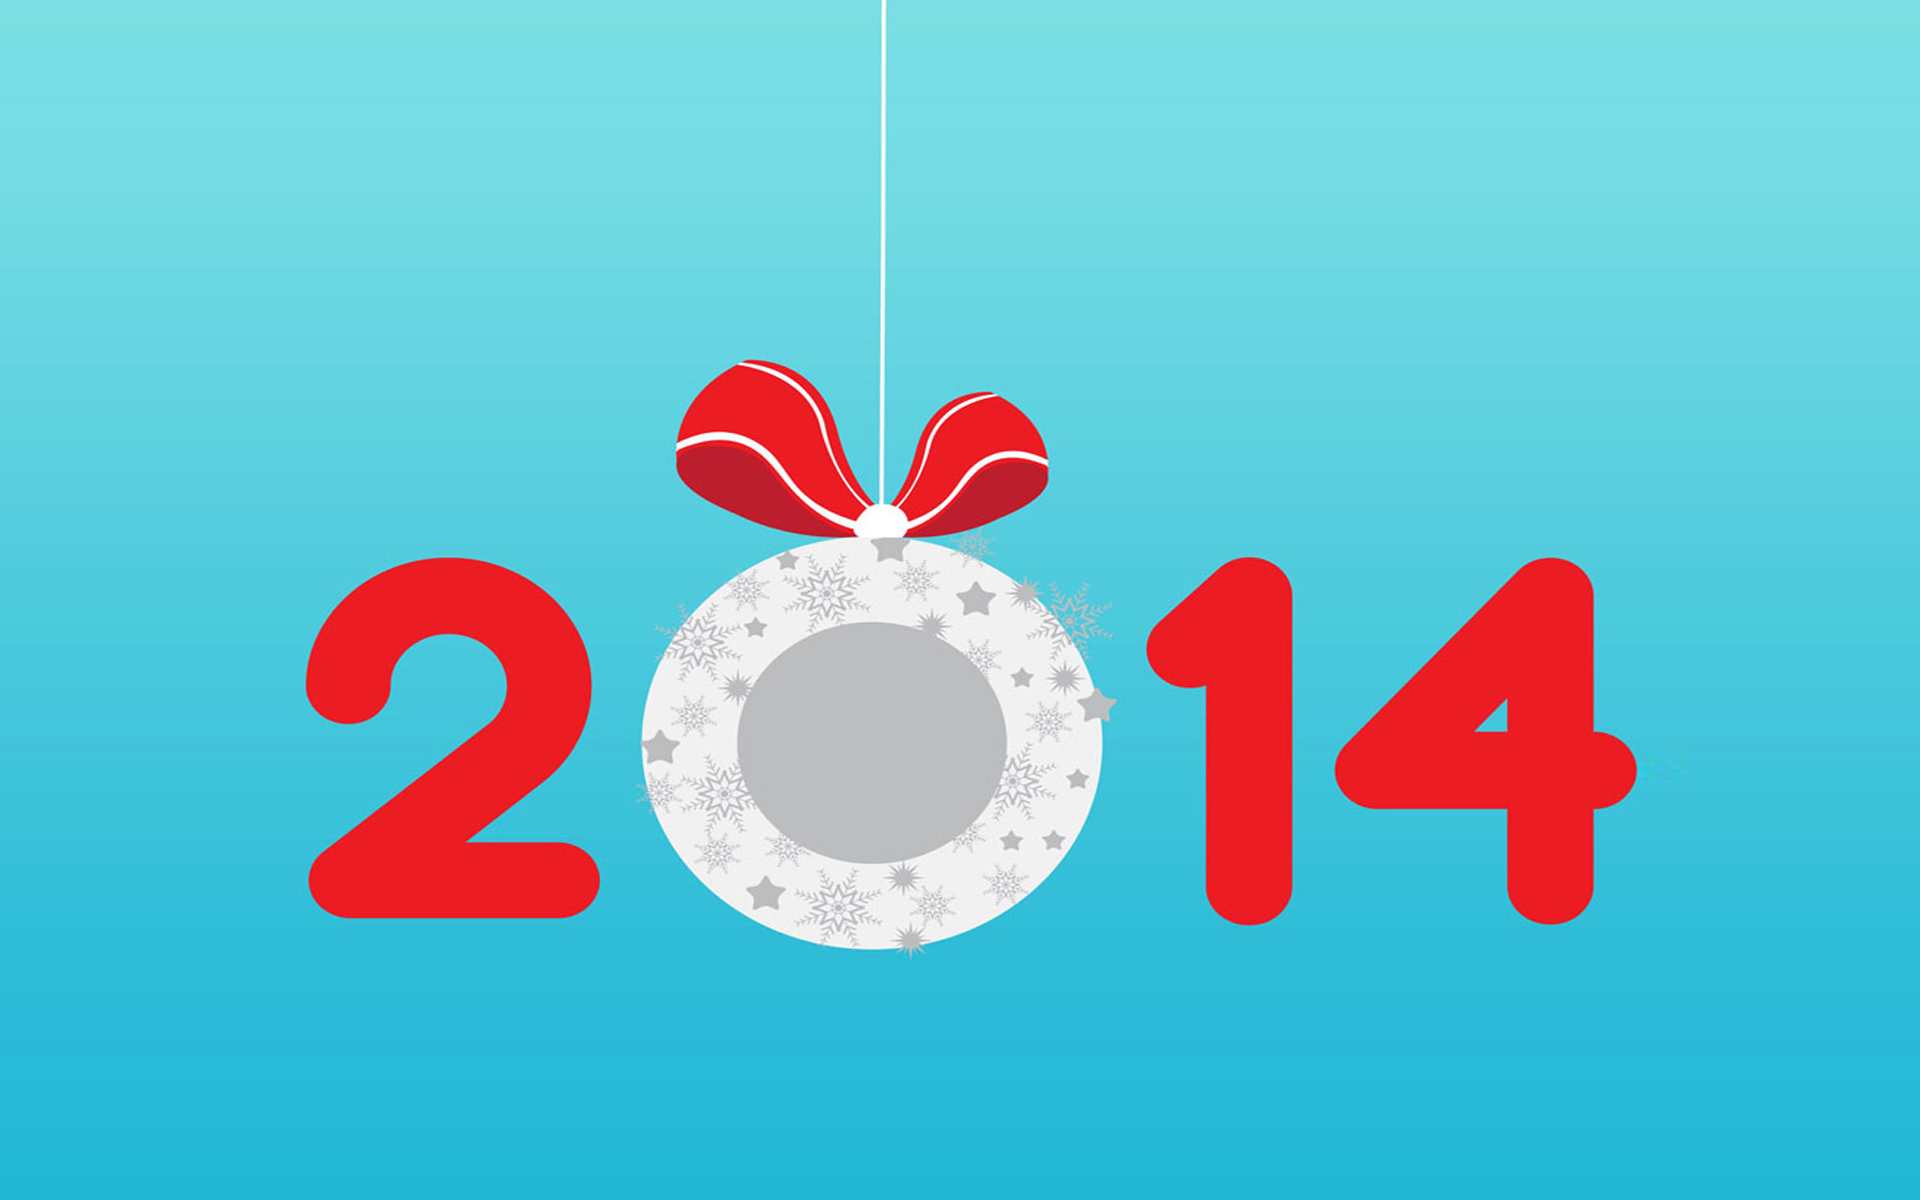 Новый год 2014, голубой фон